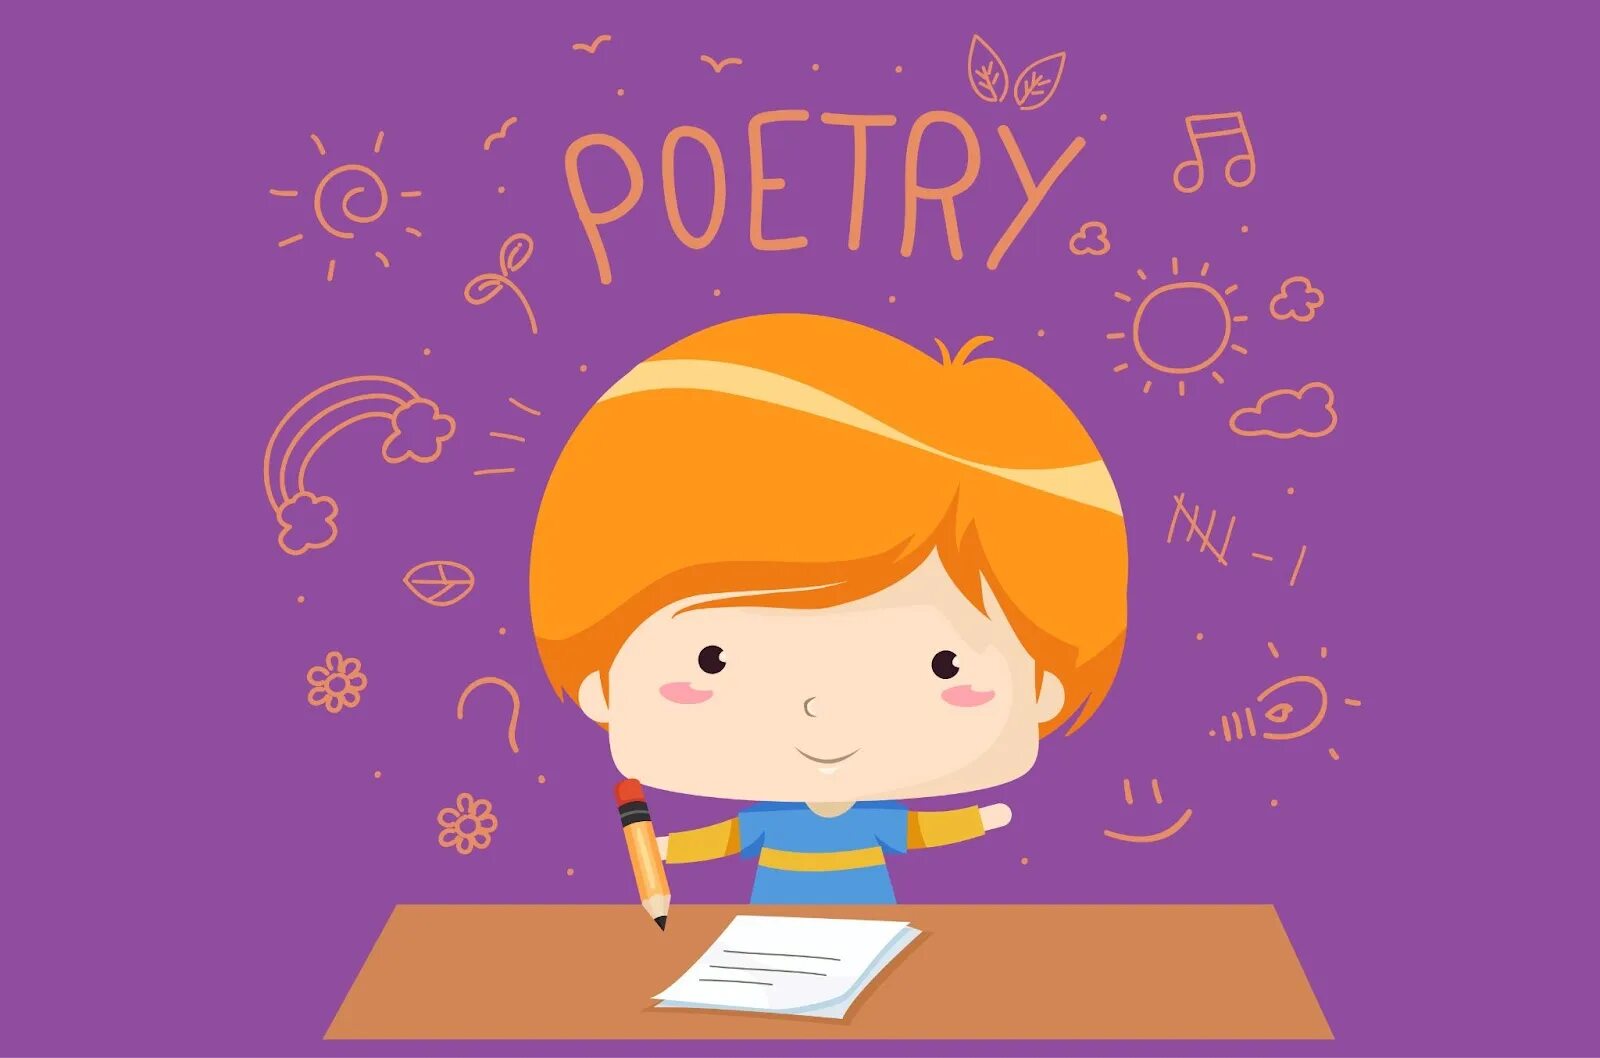 Картинка English Poetry. Стишок на английском. English poem картинки. Children's poems обложка. Поздно на английском языке